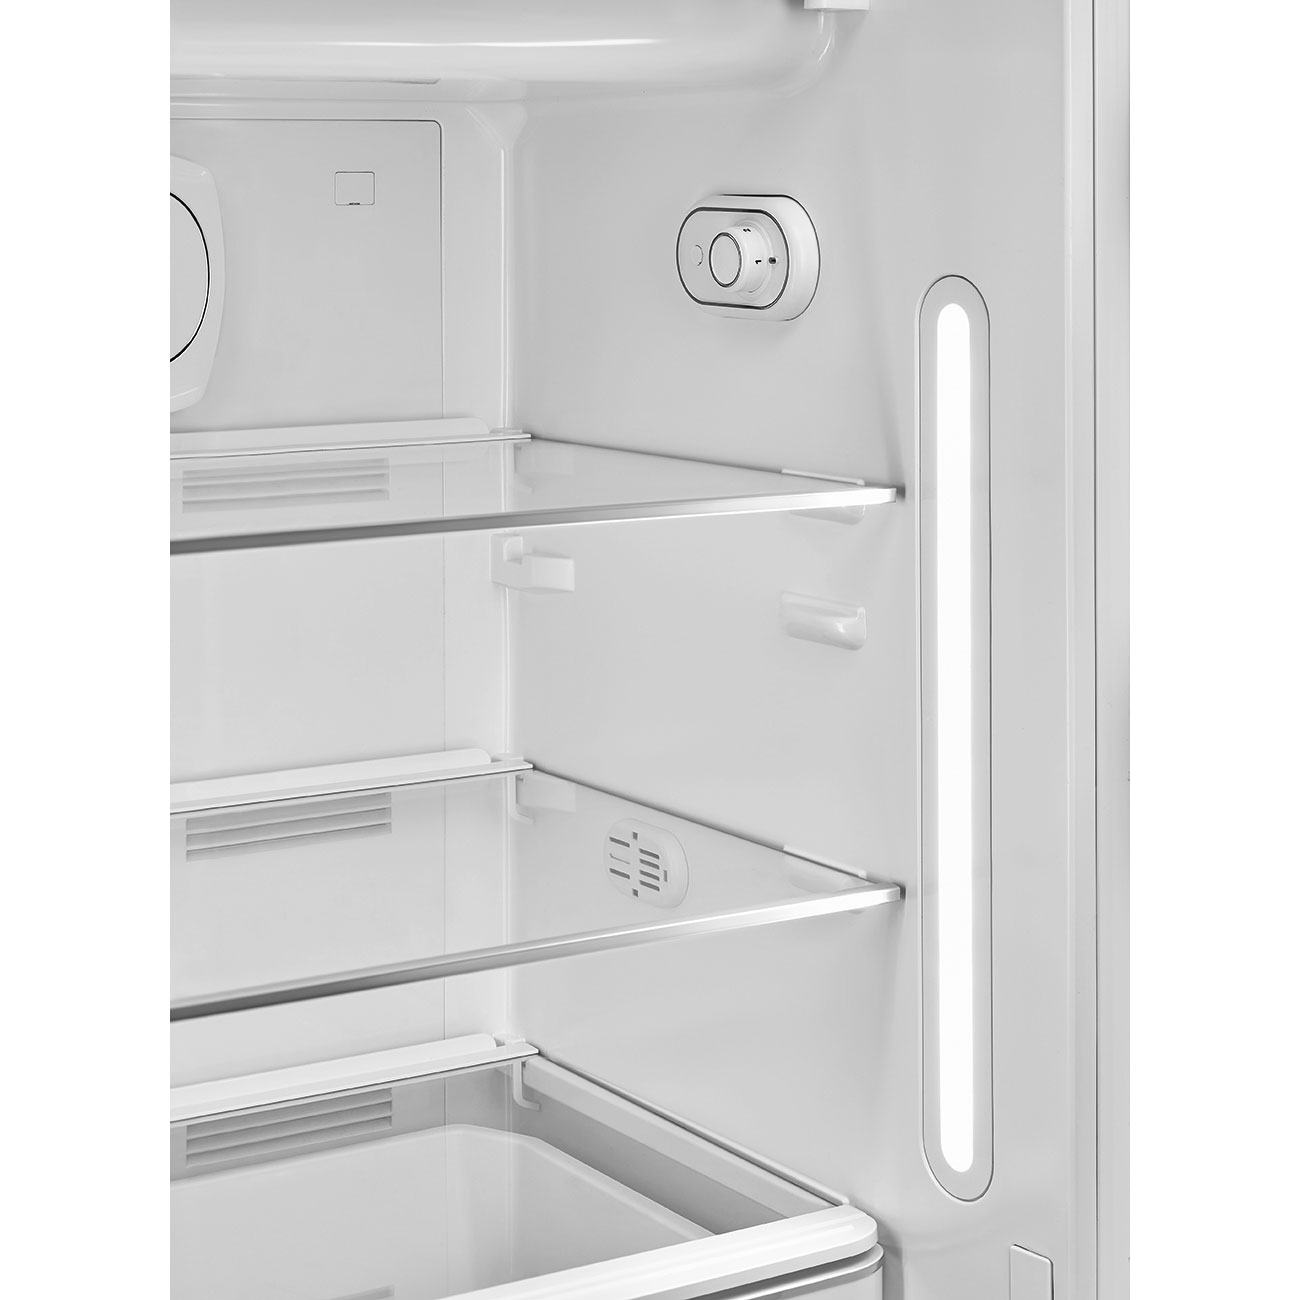 Taupe refrigerator - Smeg_7